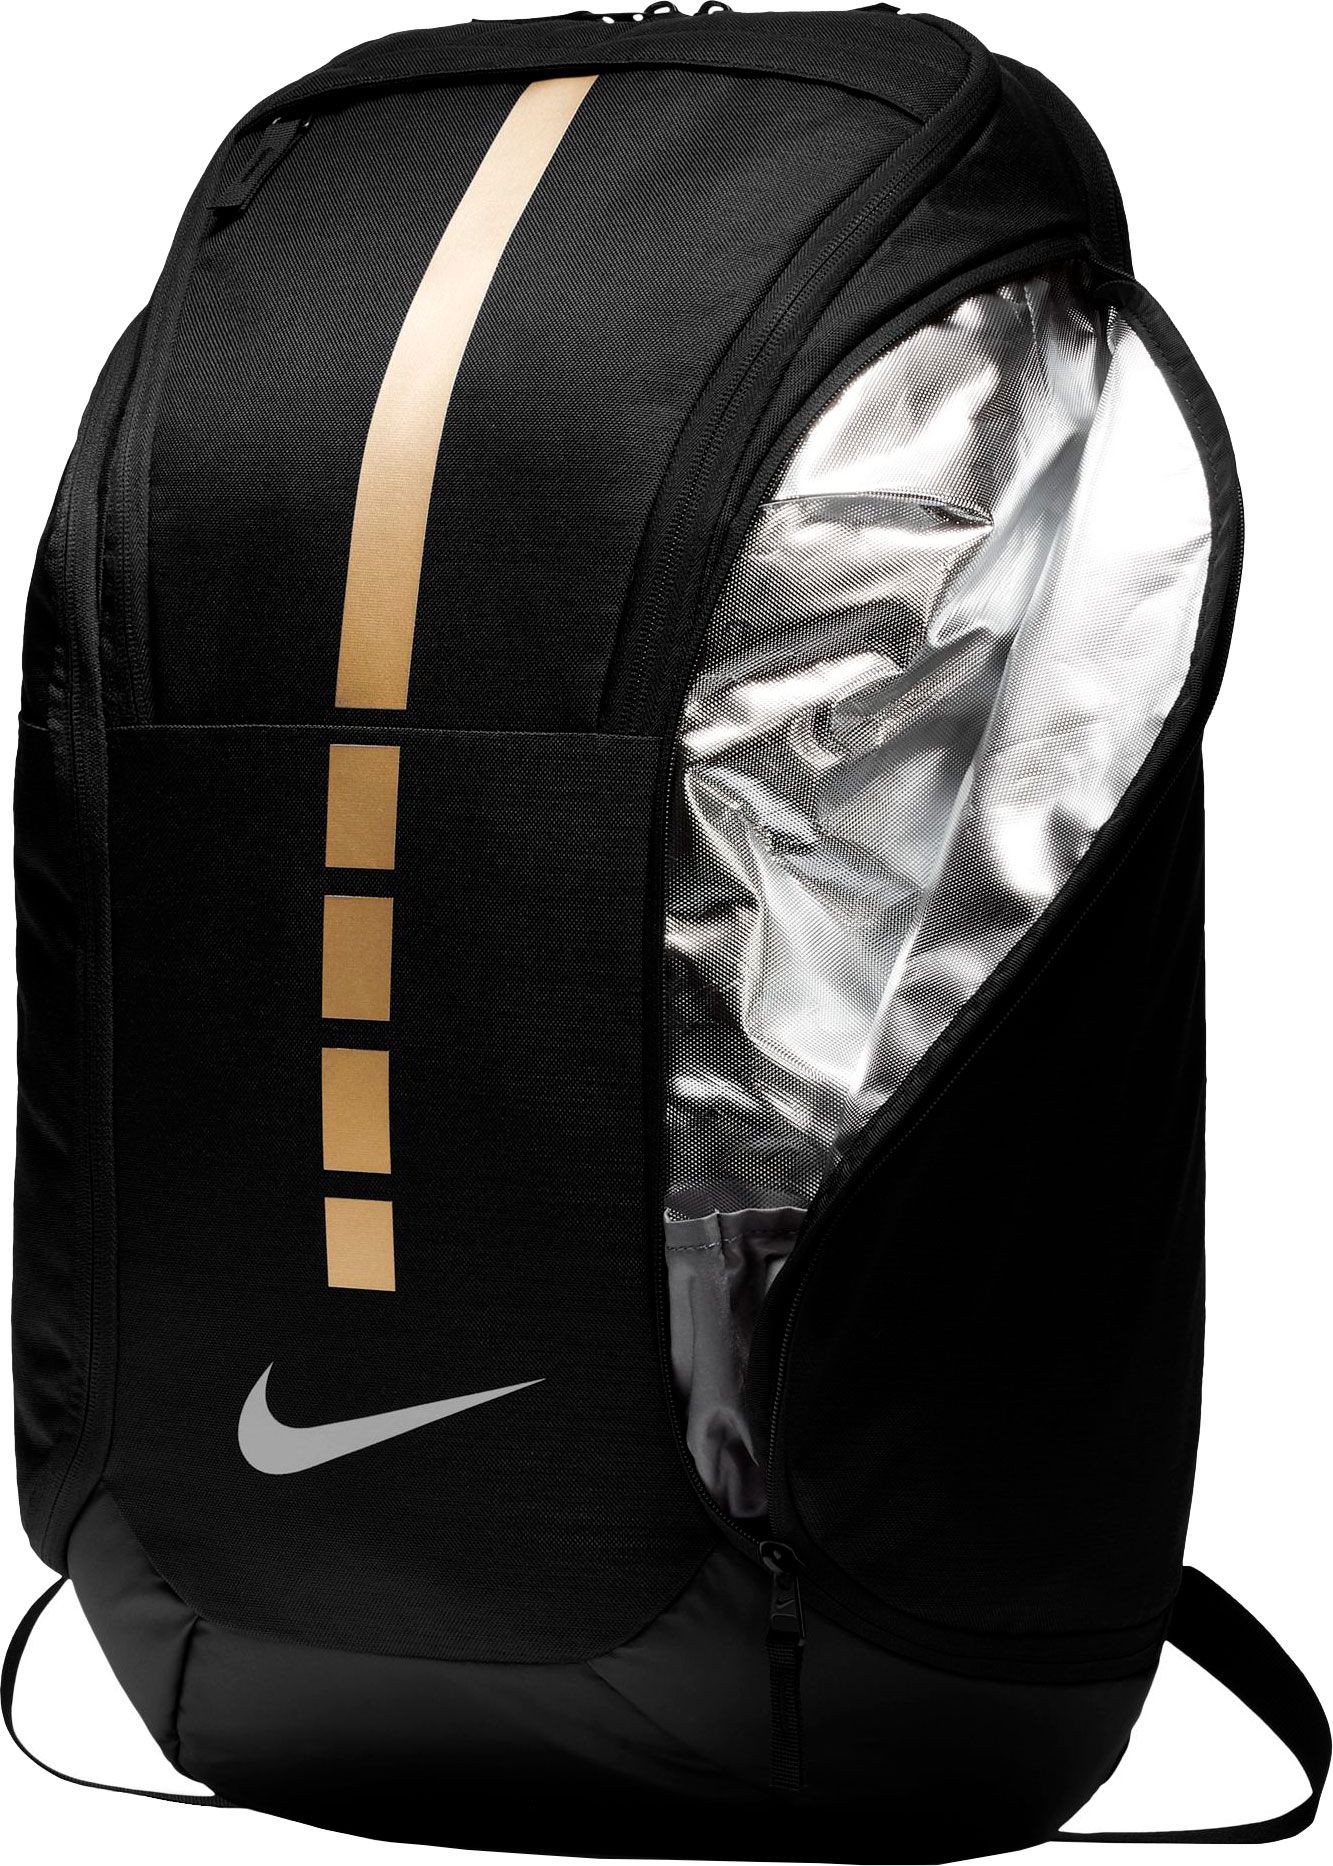 elite backpacks on sale